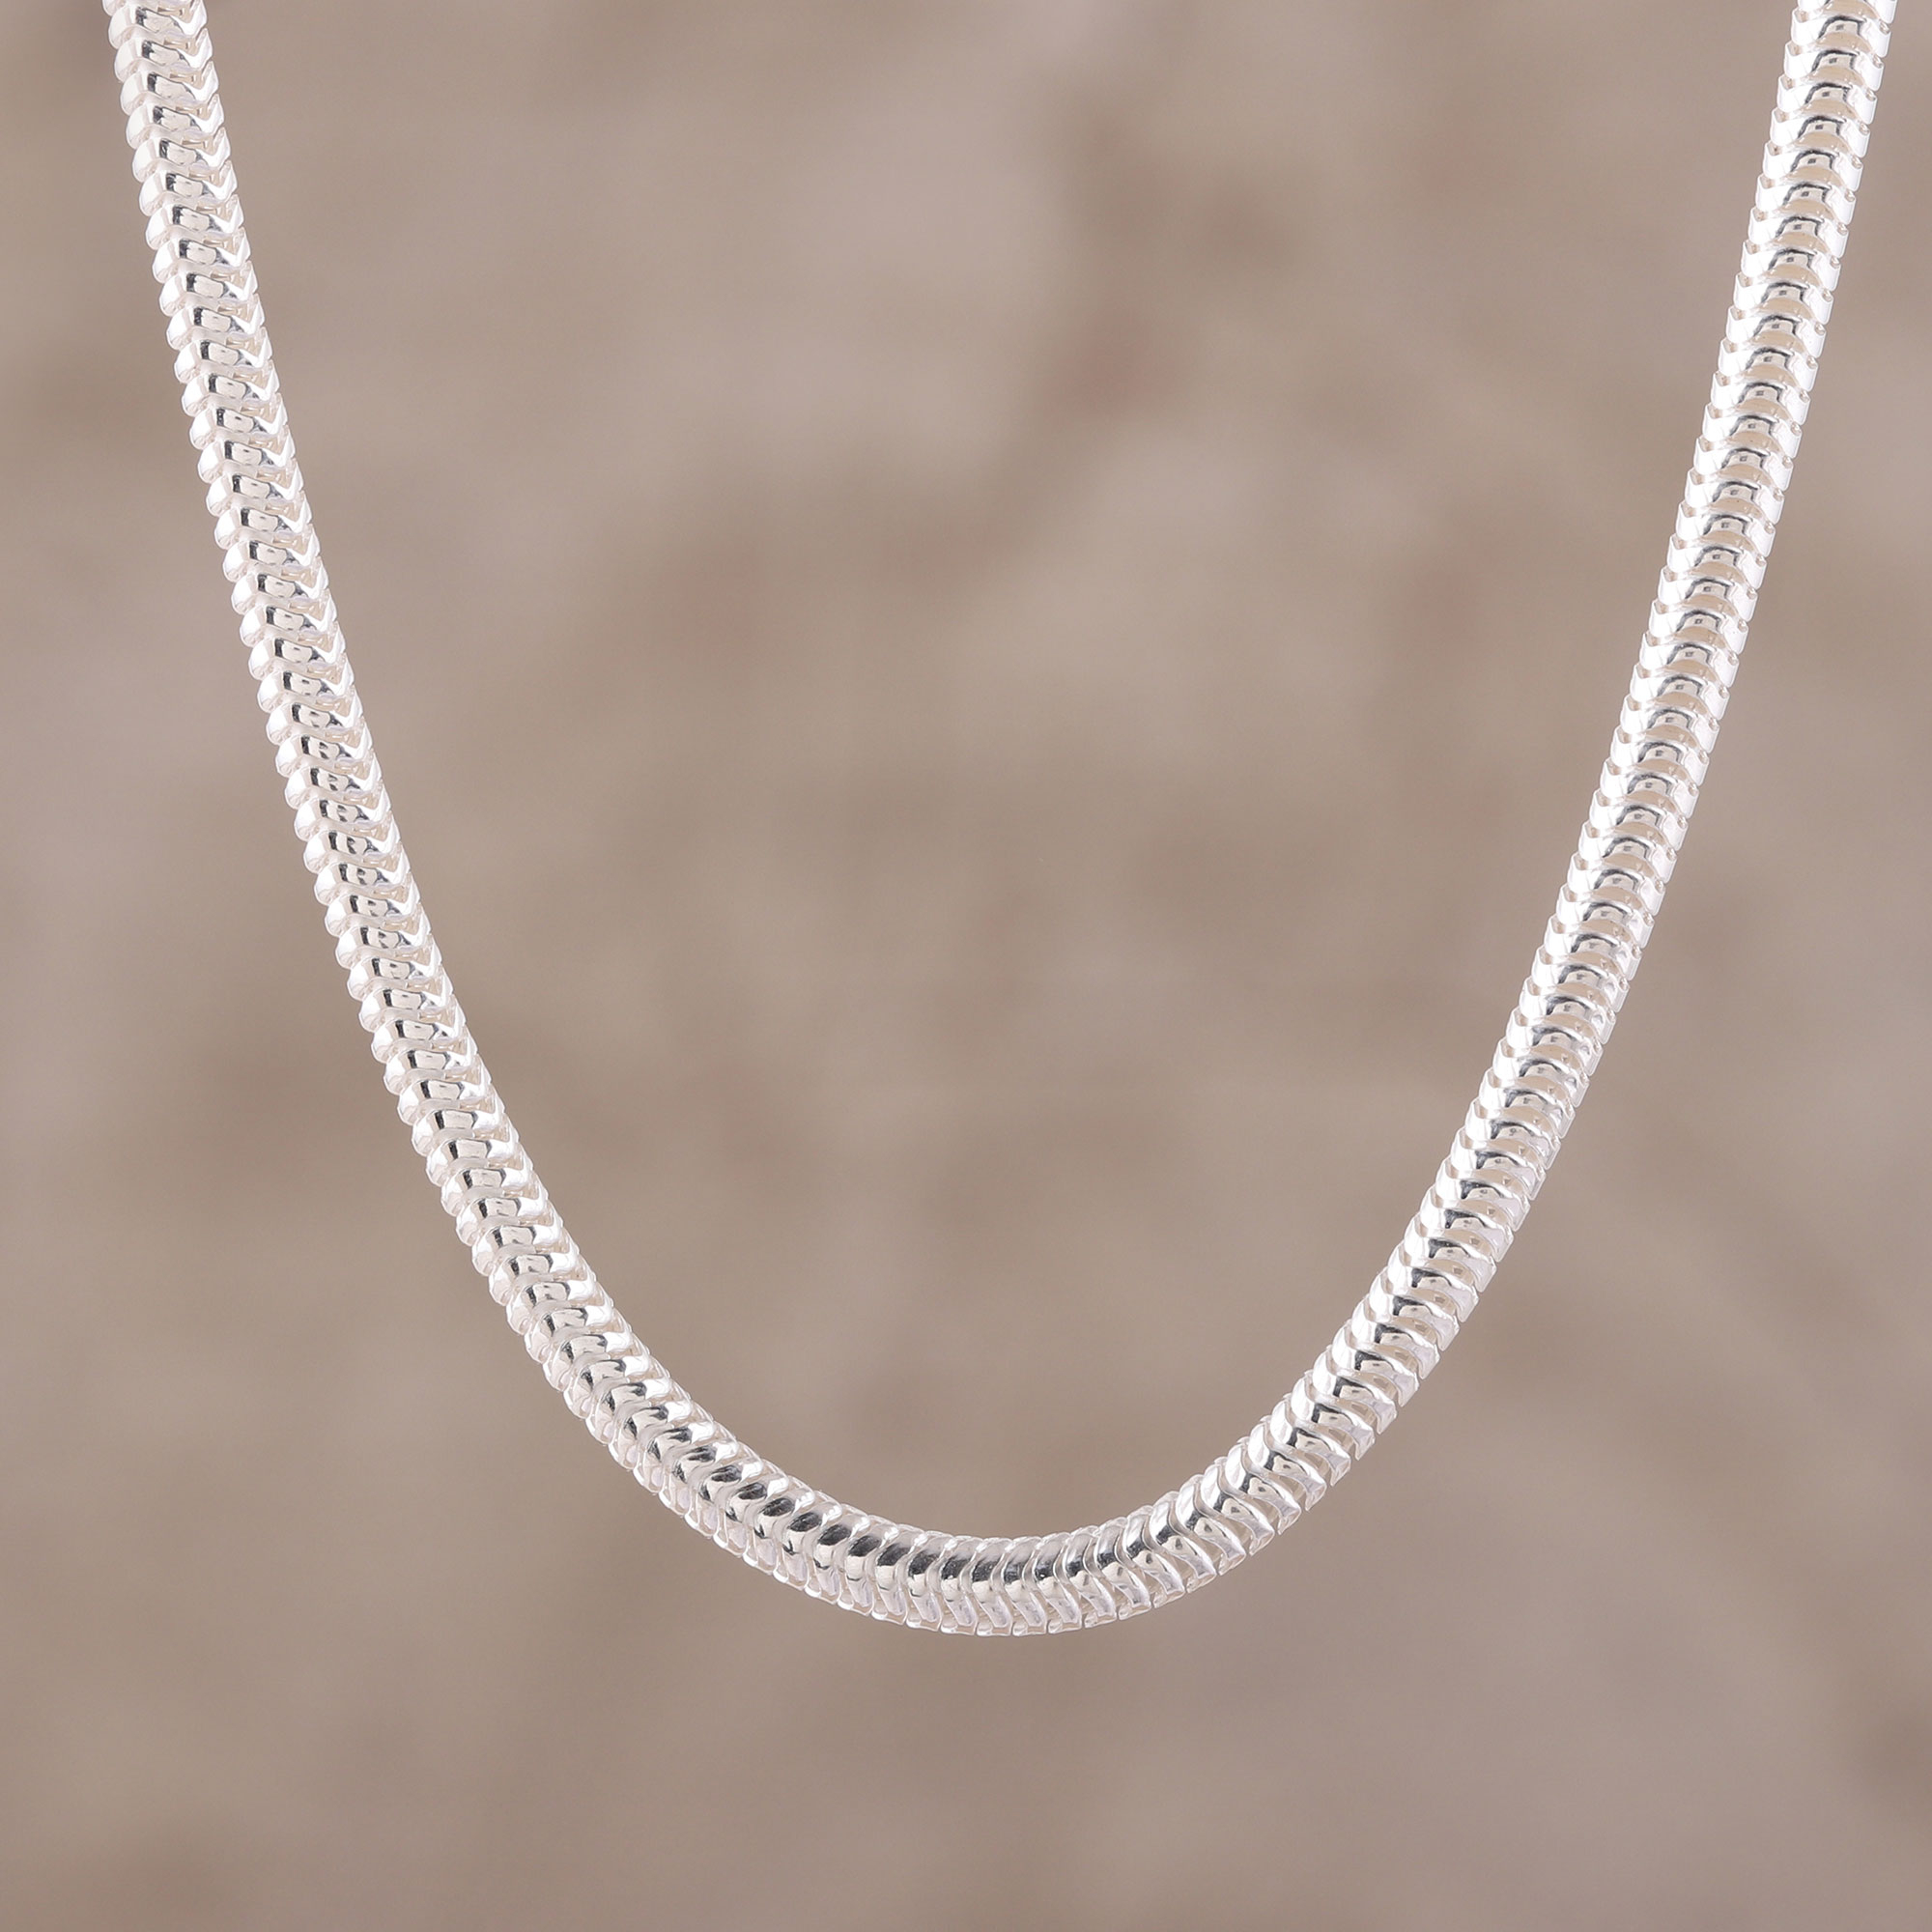 Sterling Silver 8 Mm Omega Necklace - 16 Inch | Sarraf.com